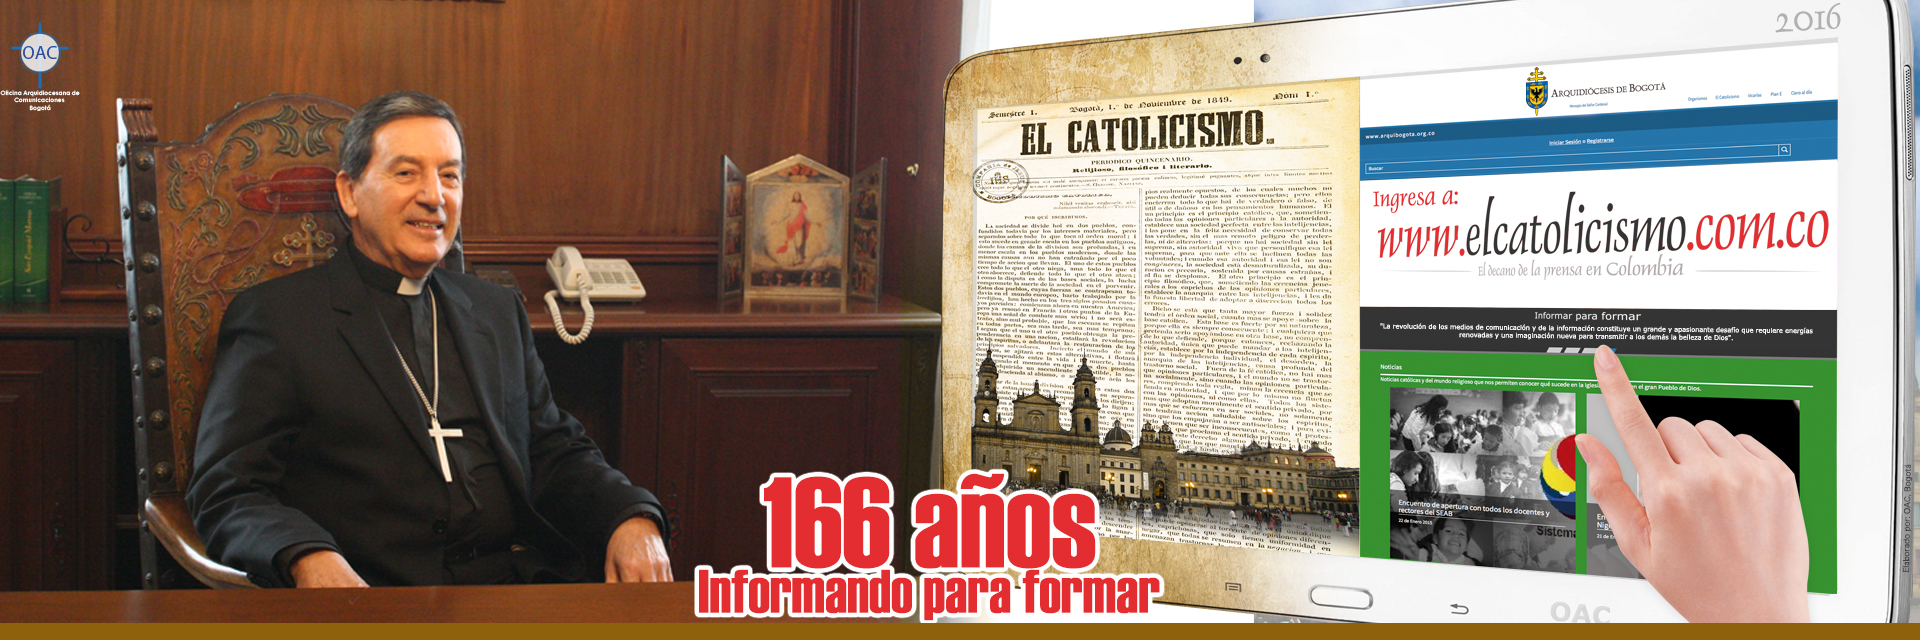 Invitación del Señor Cardenal a ver El Catolicismo.com.co